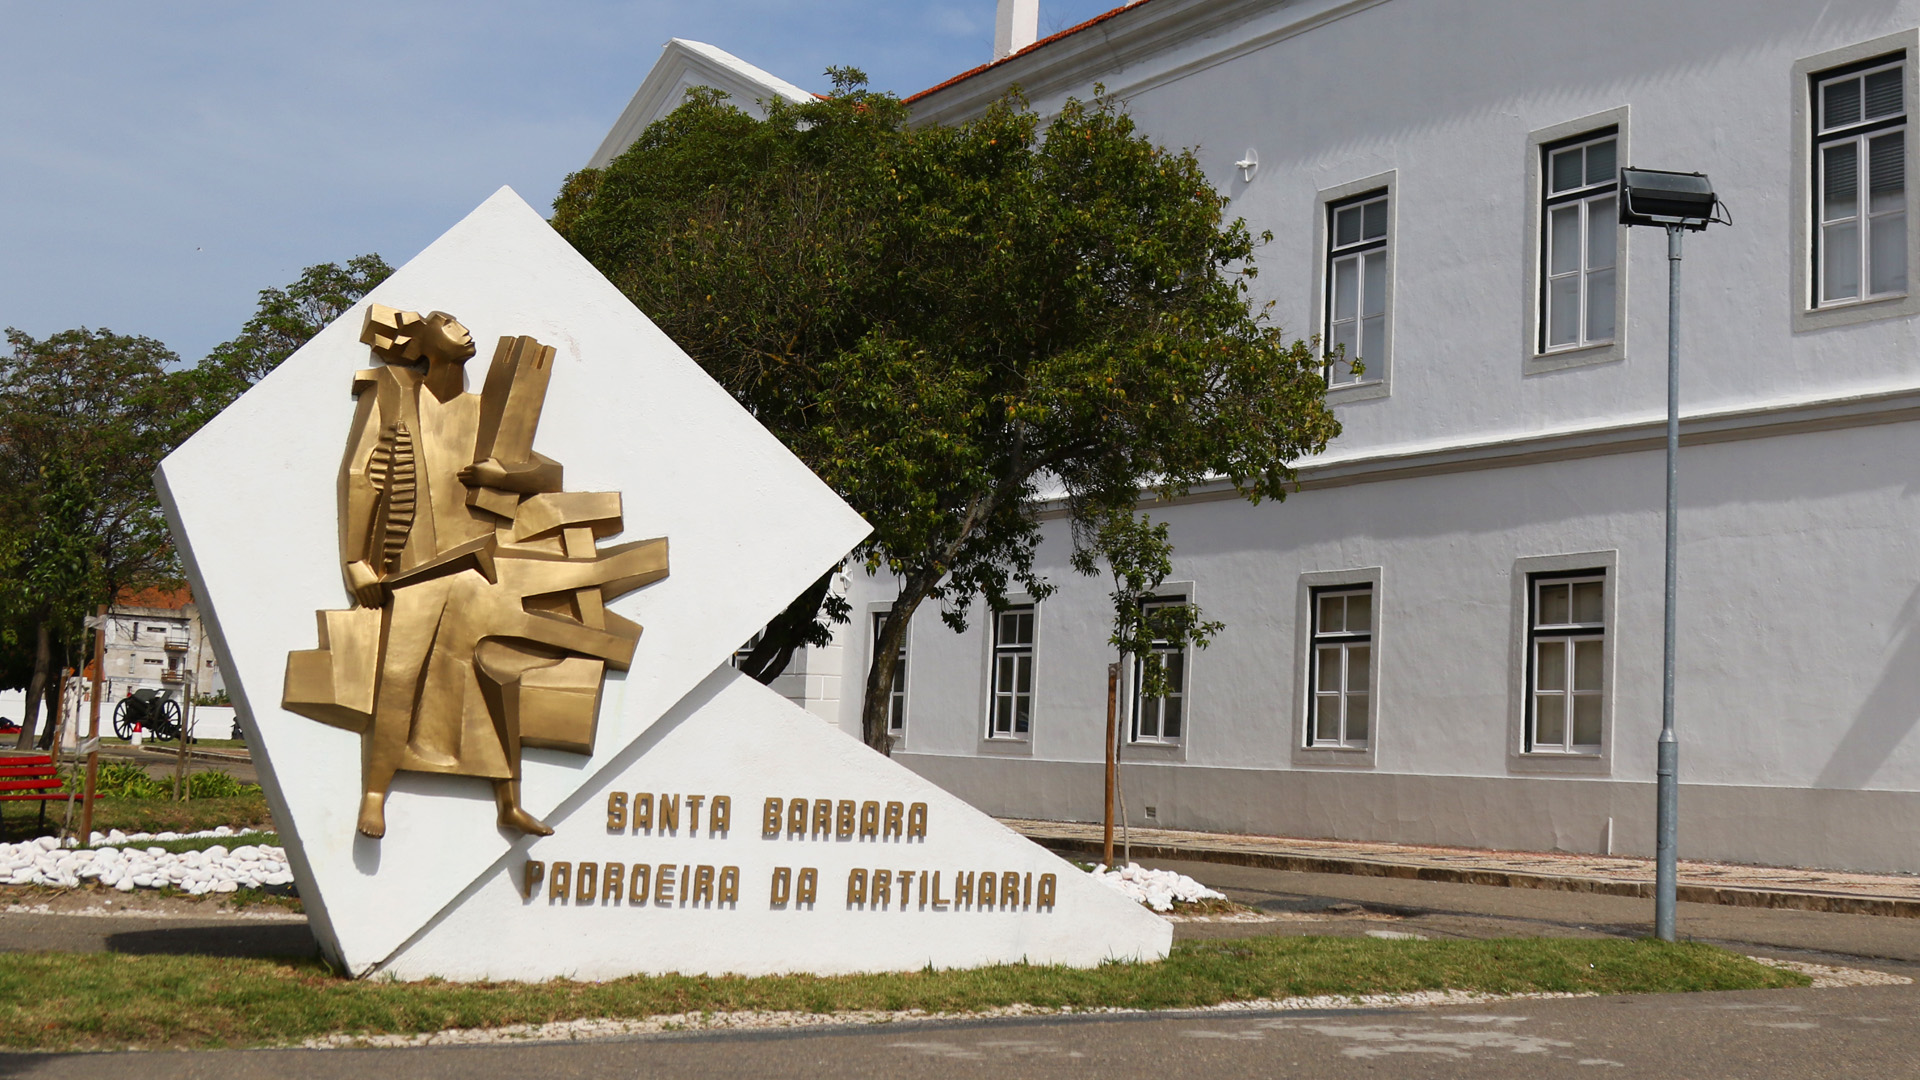 Inauguração da Exposição Itinerante Dedicada a “Santa Bárbara” Padroeira da Artilharia